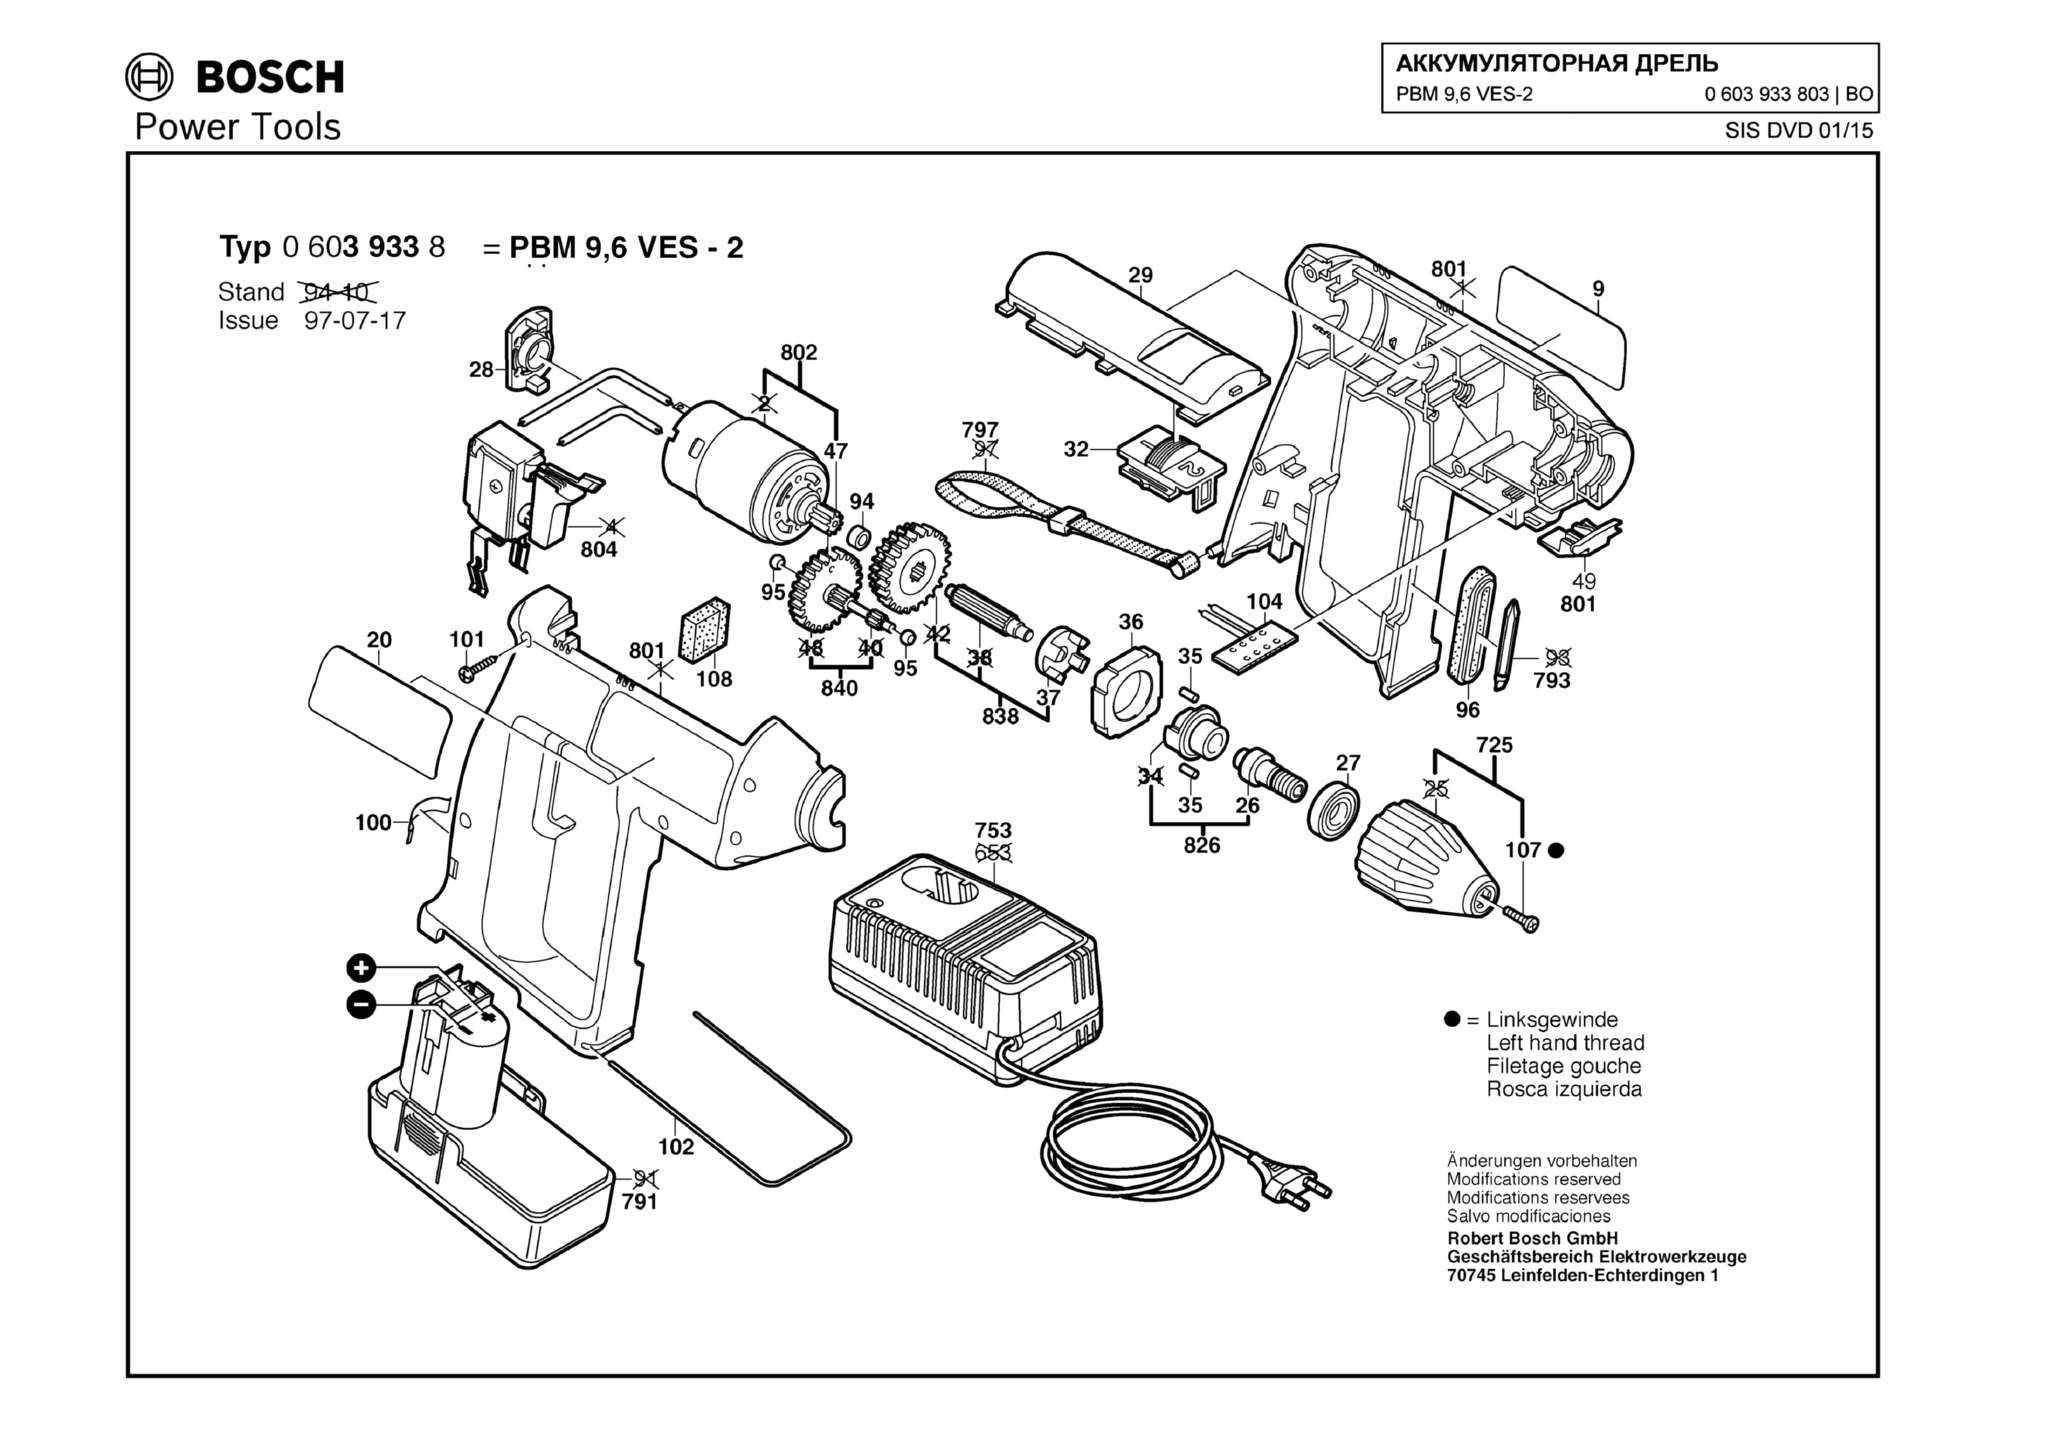 Запчасти, схема и деталировка Bosch PBM 9,6 VES-2 (ТИП 0603933803)